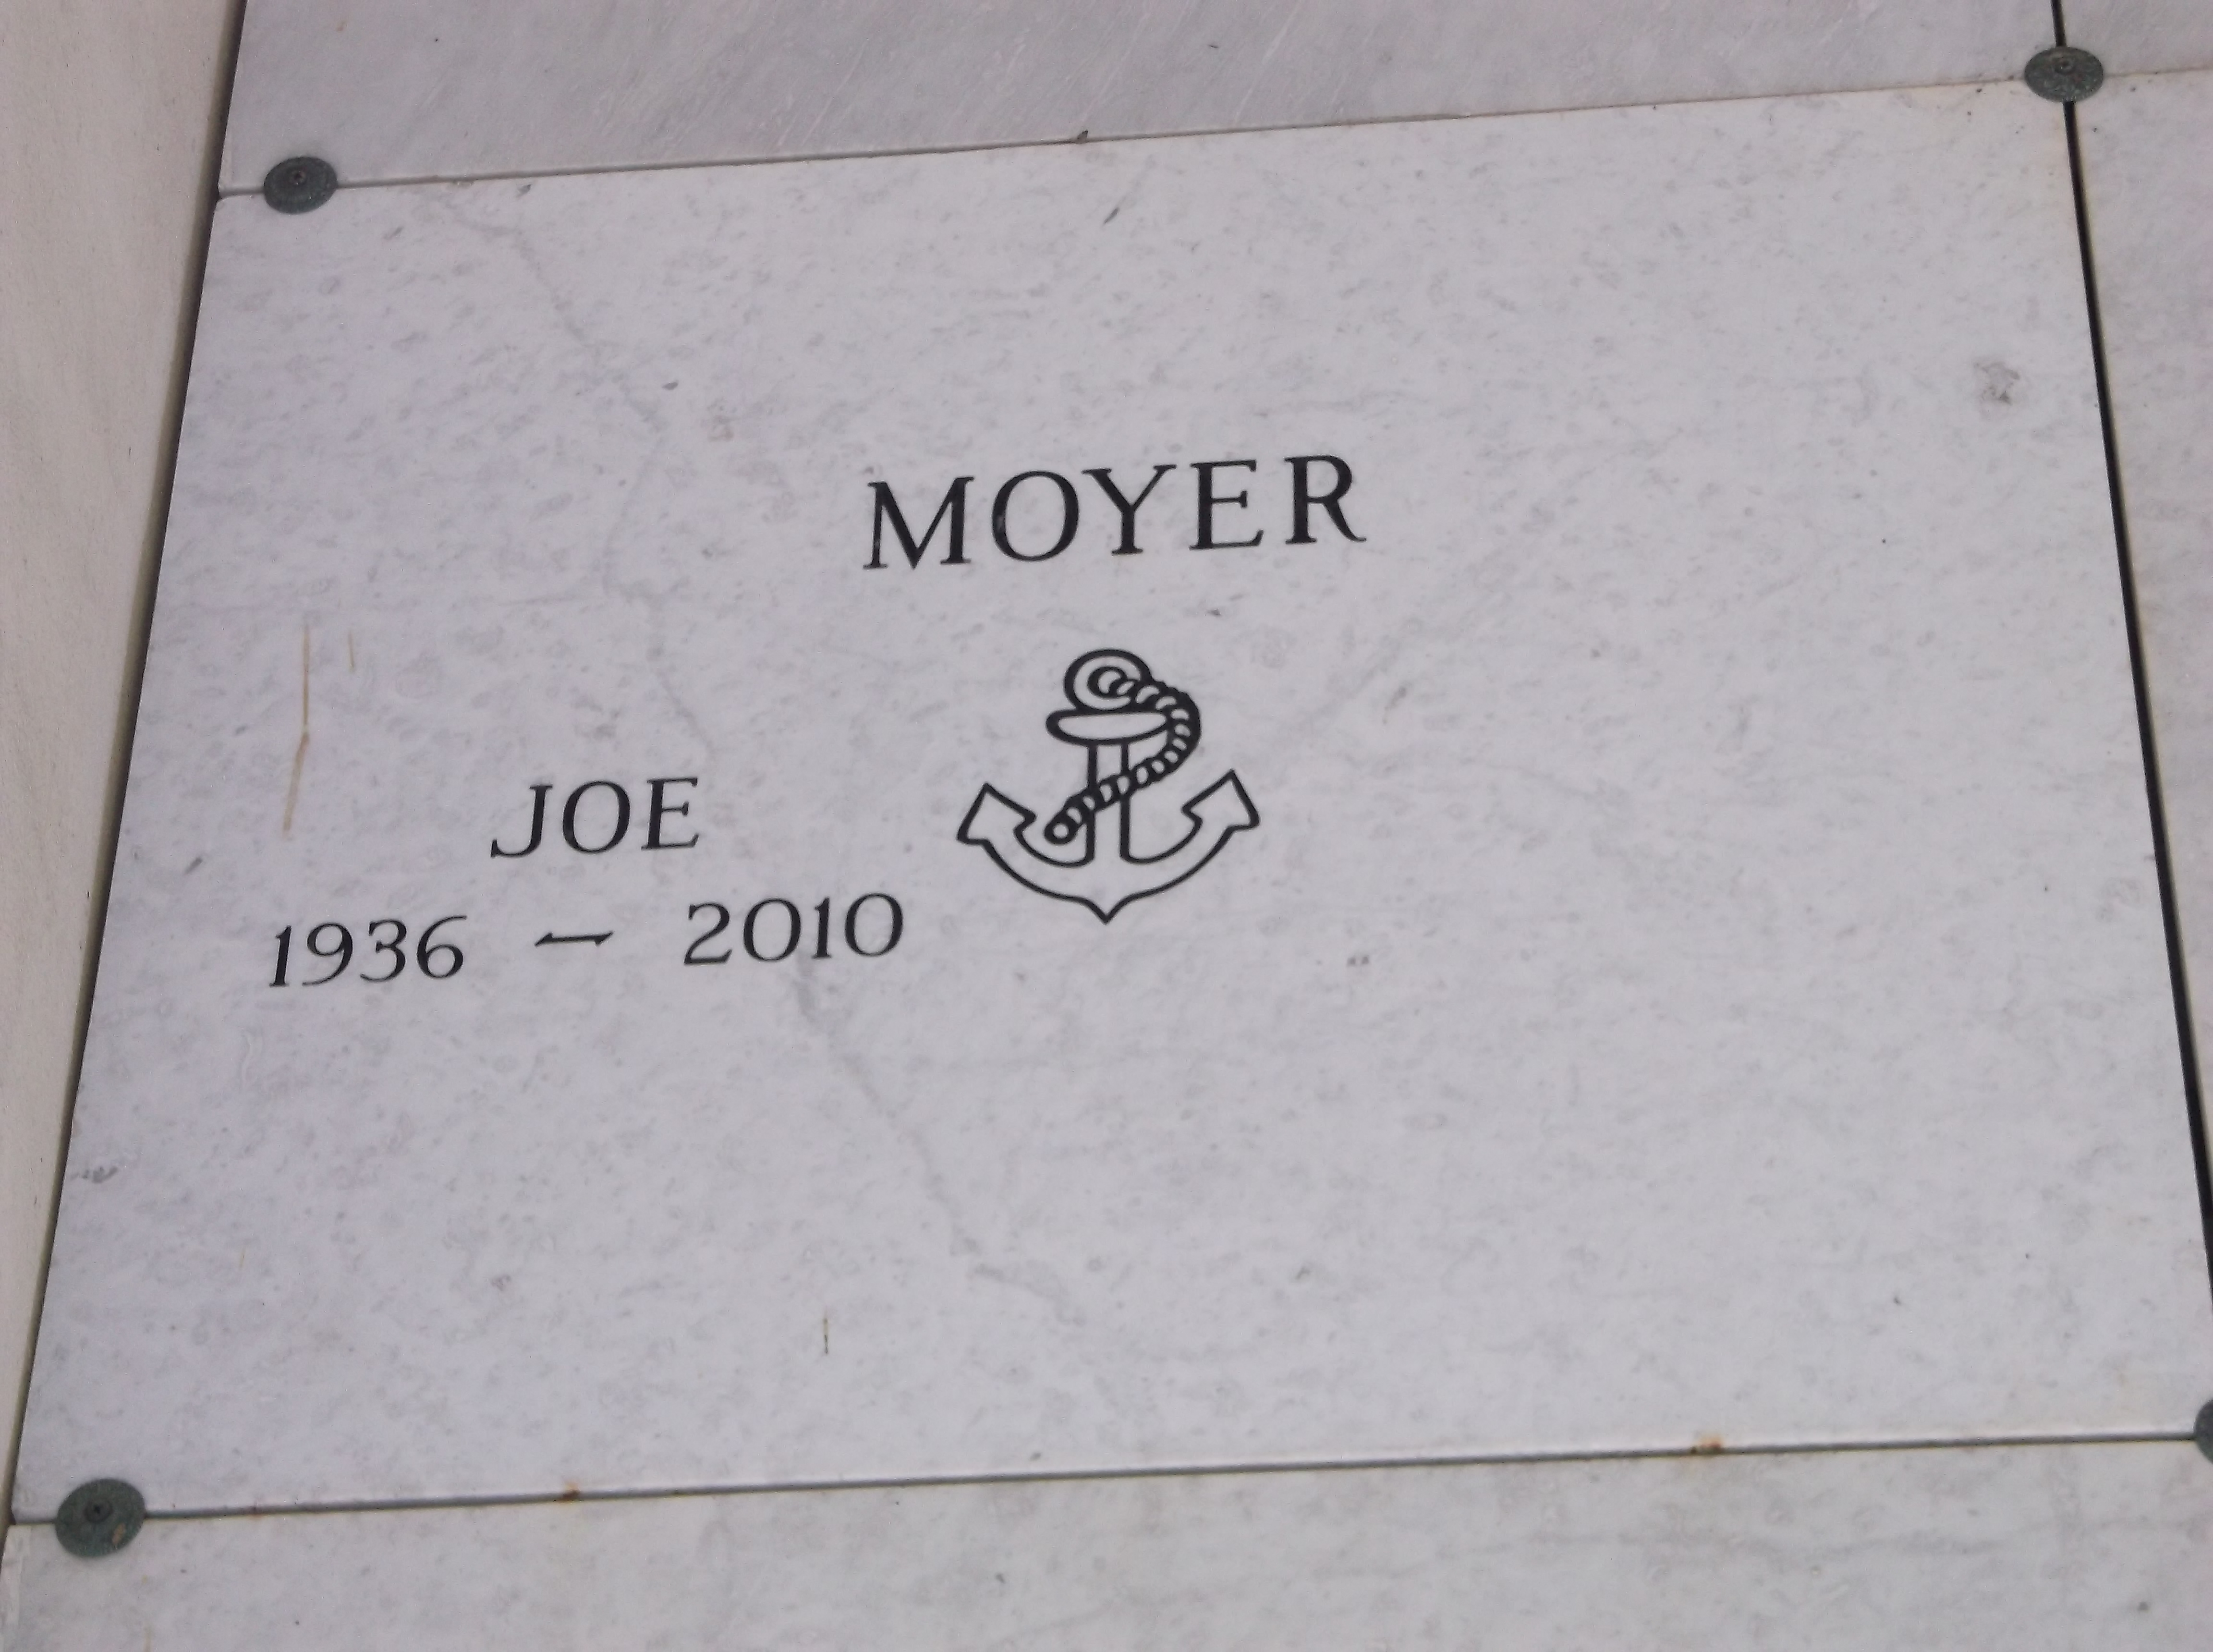 Joe Moyer